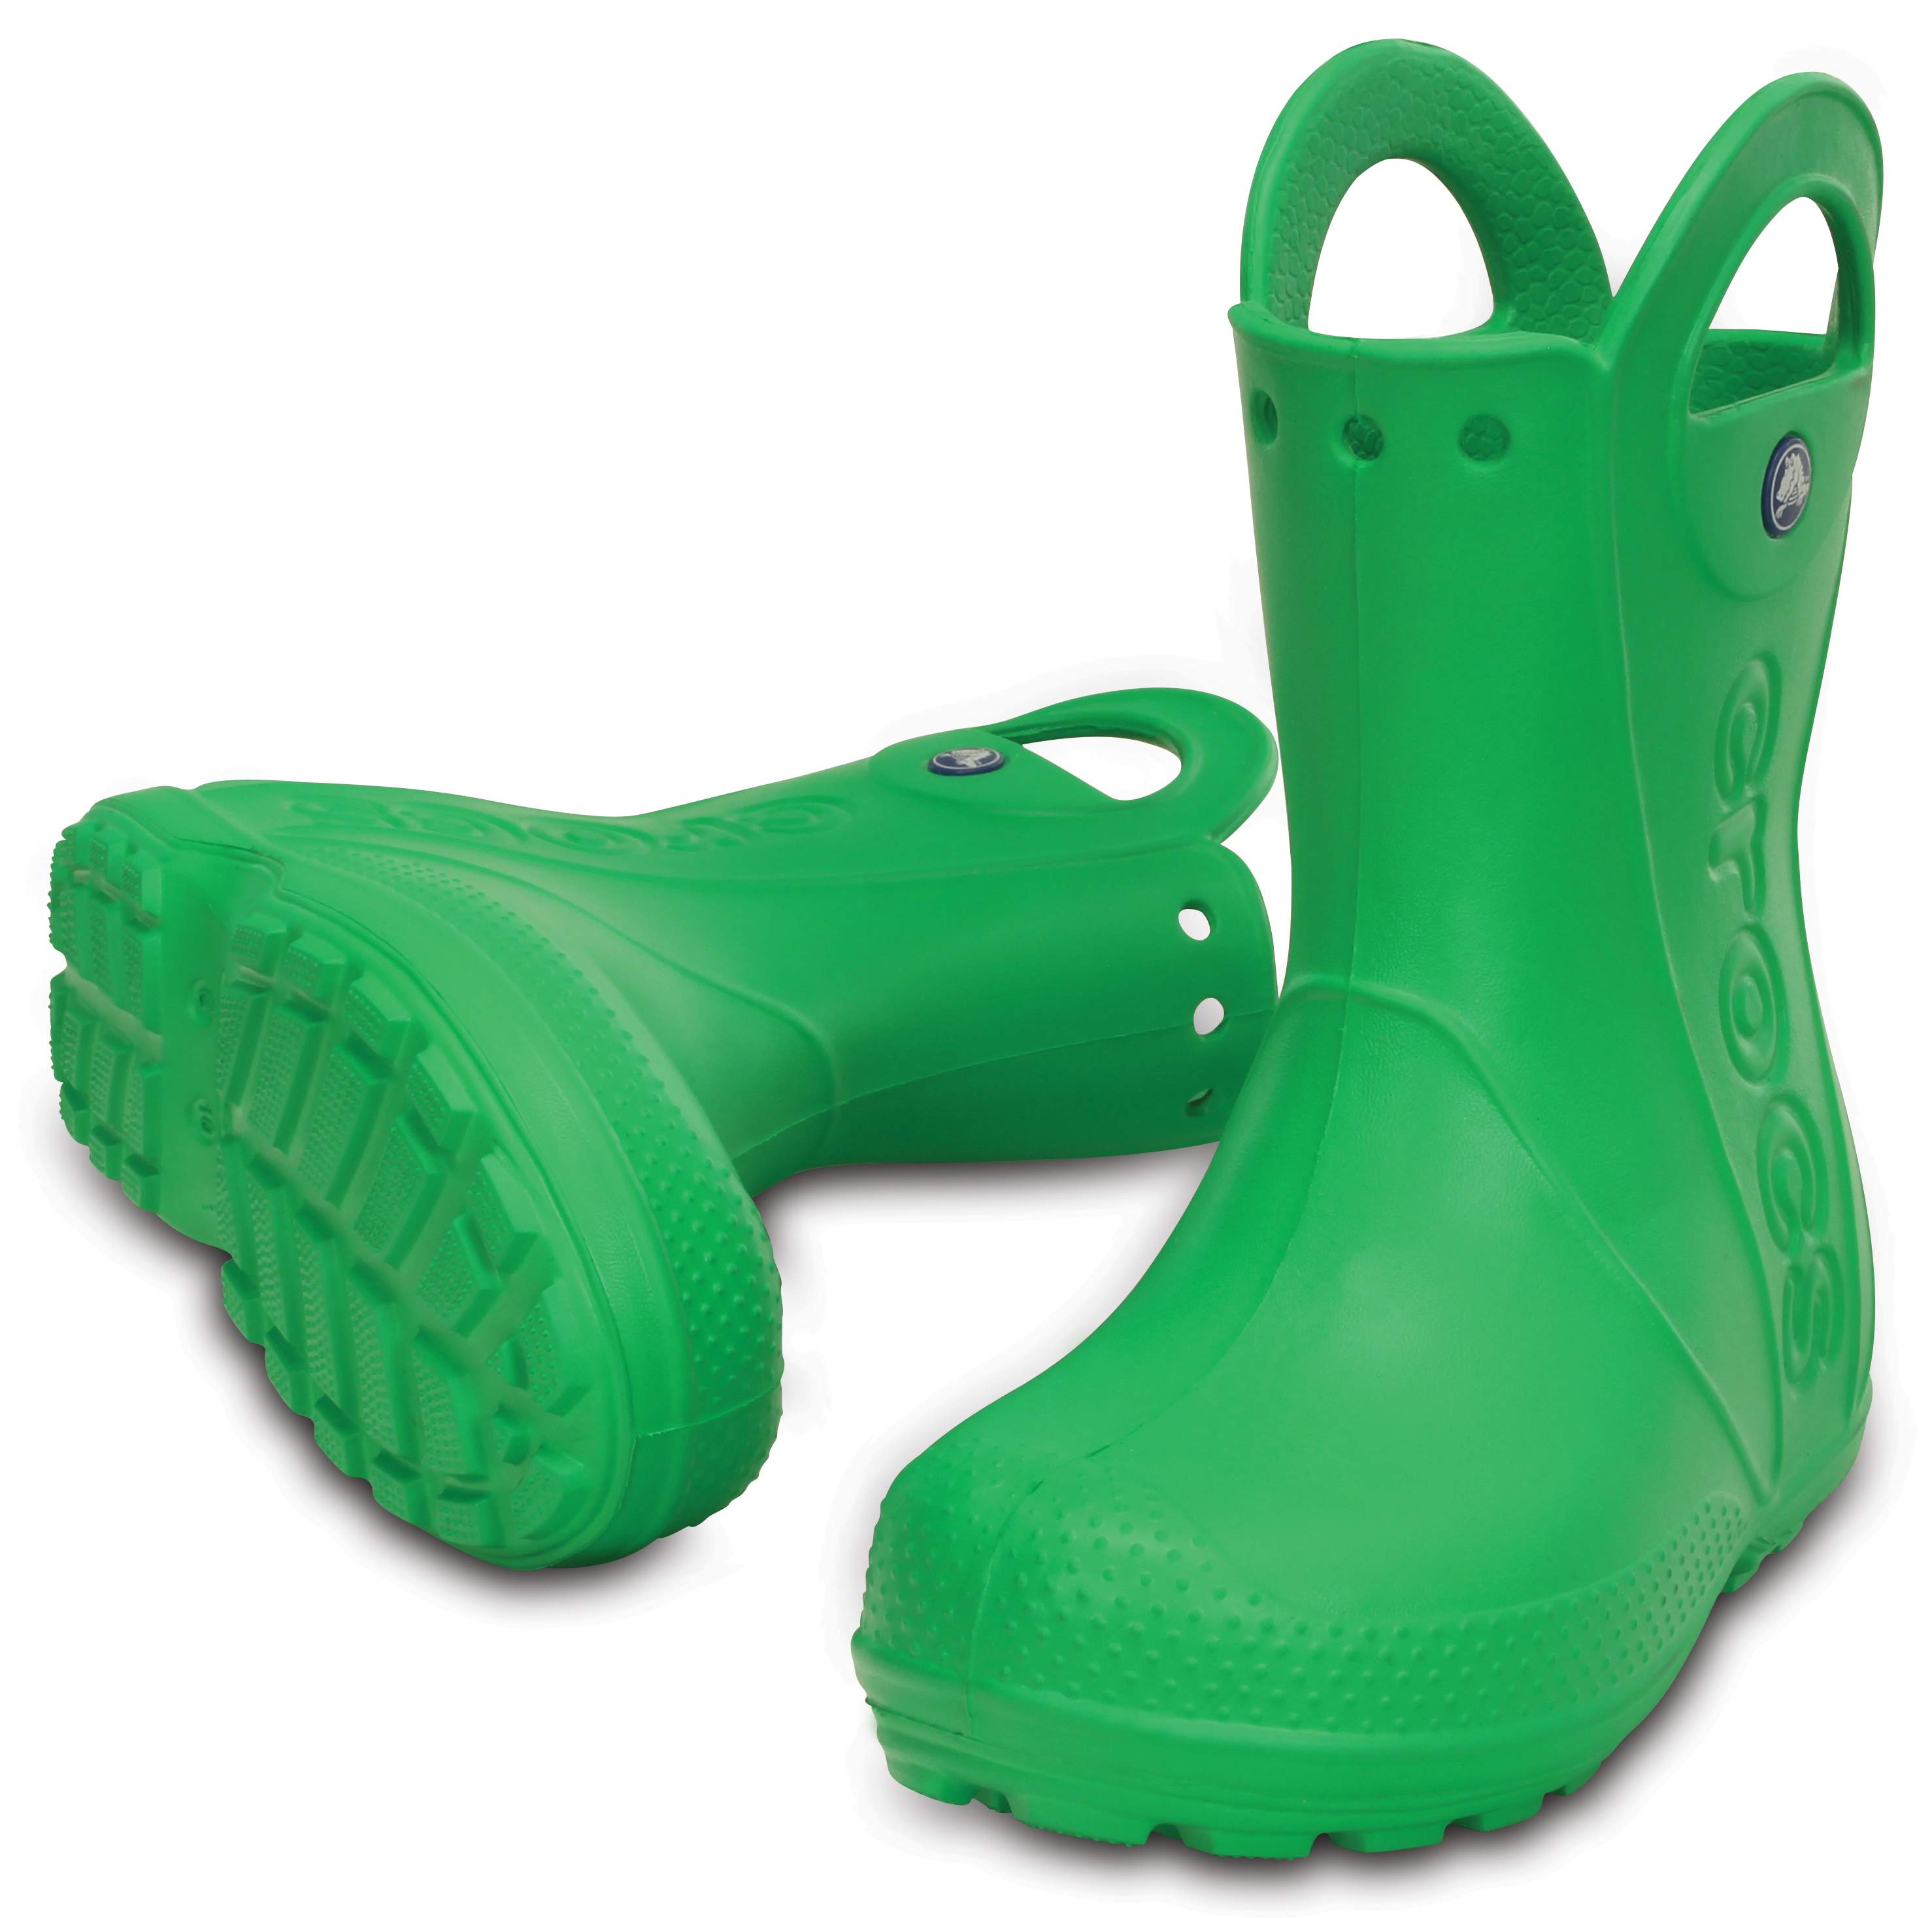 crocs rain boots size chart